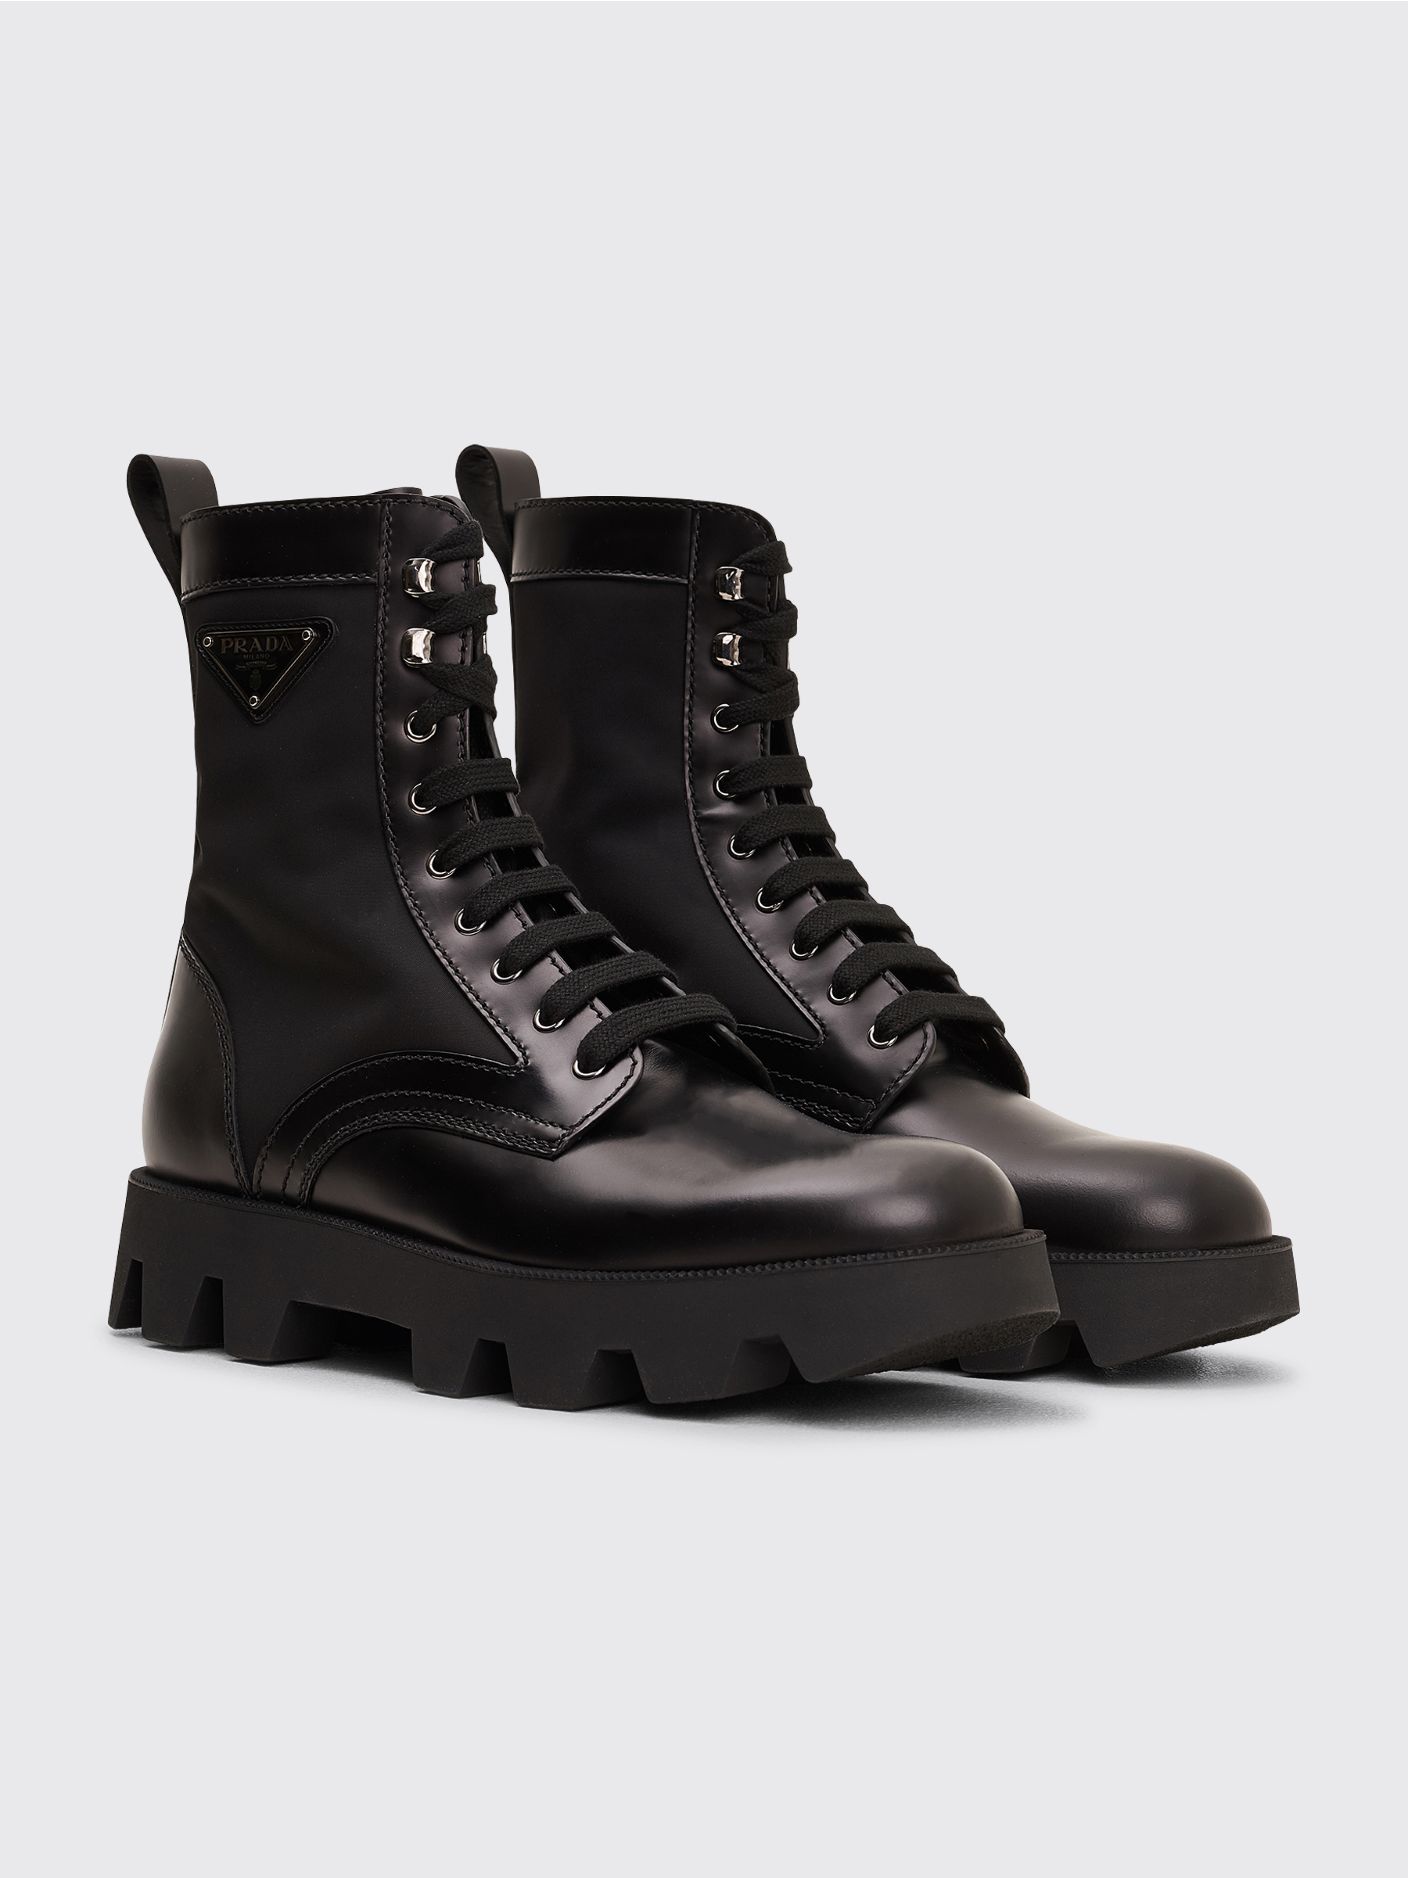 Très Bien - Prada Leather Ankle Boots Black